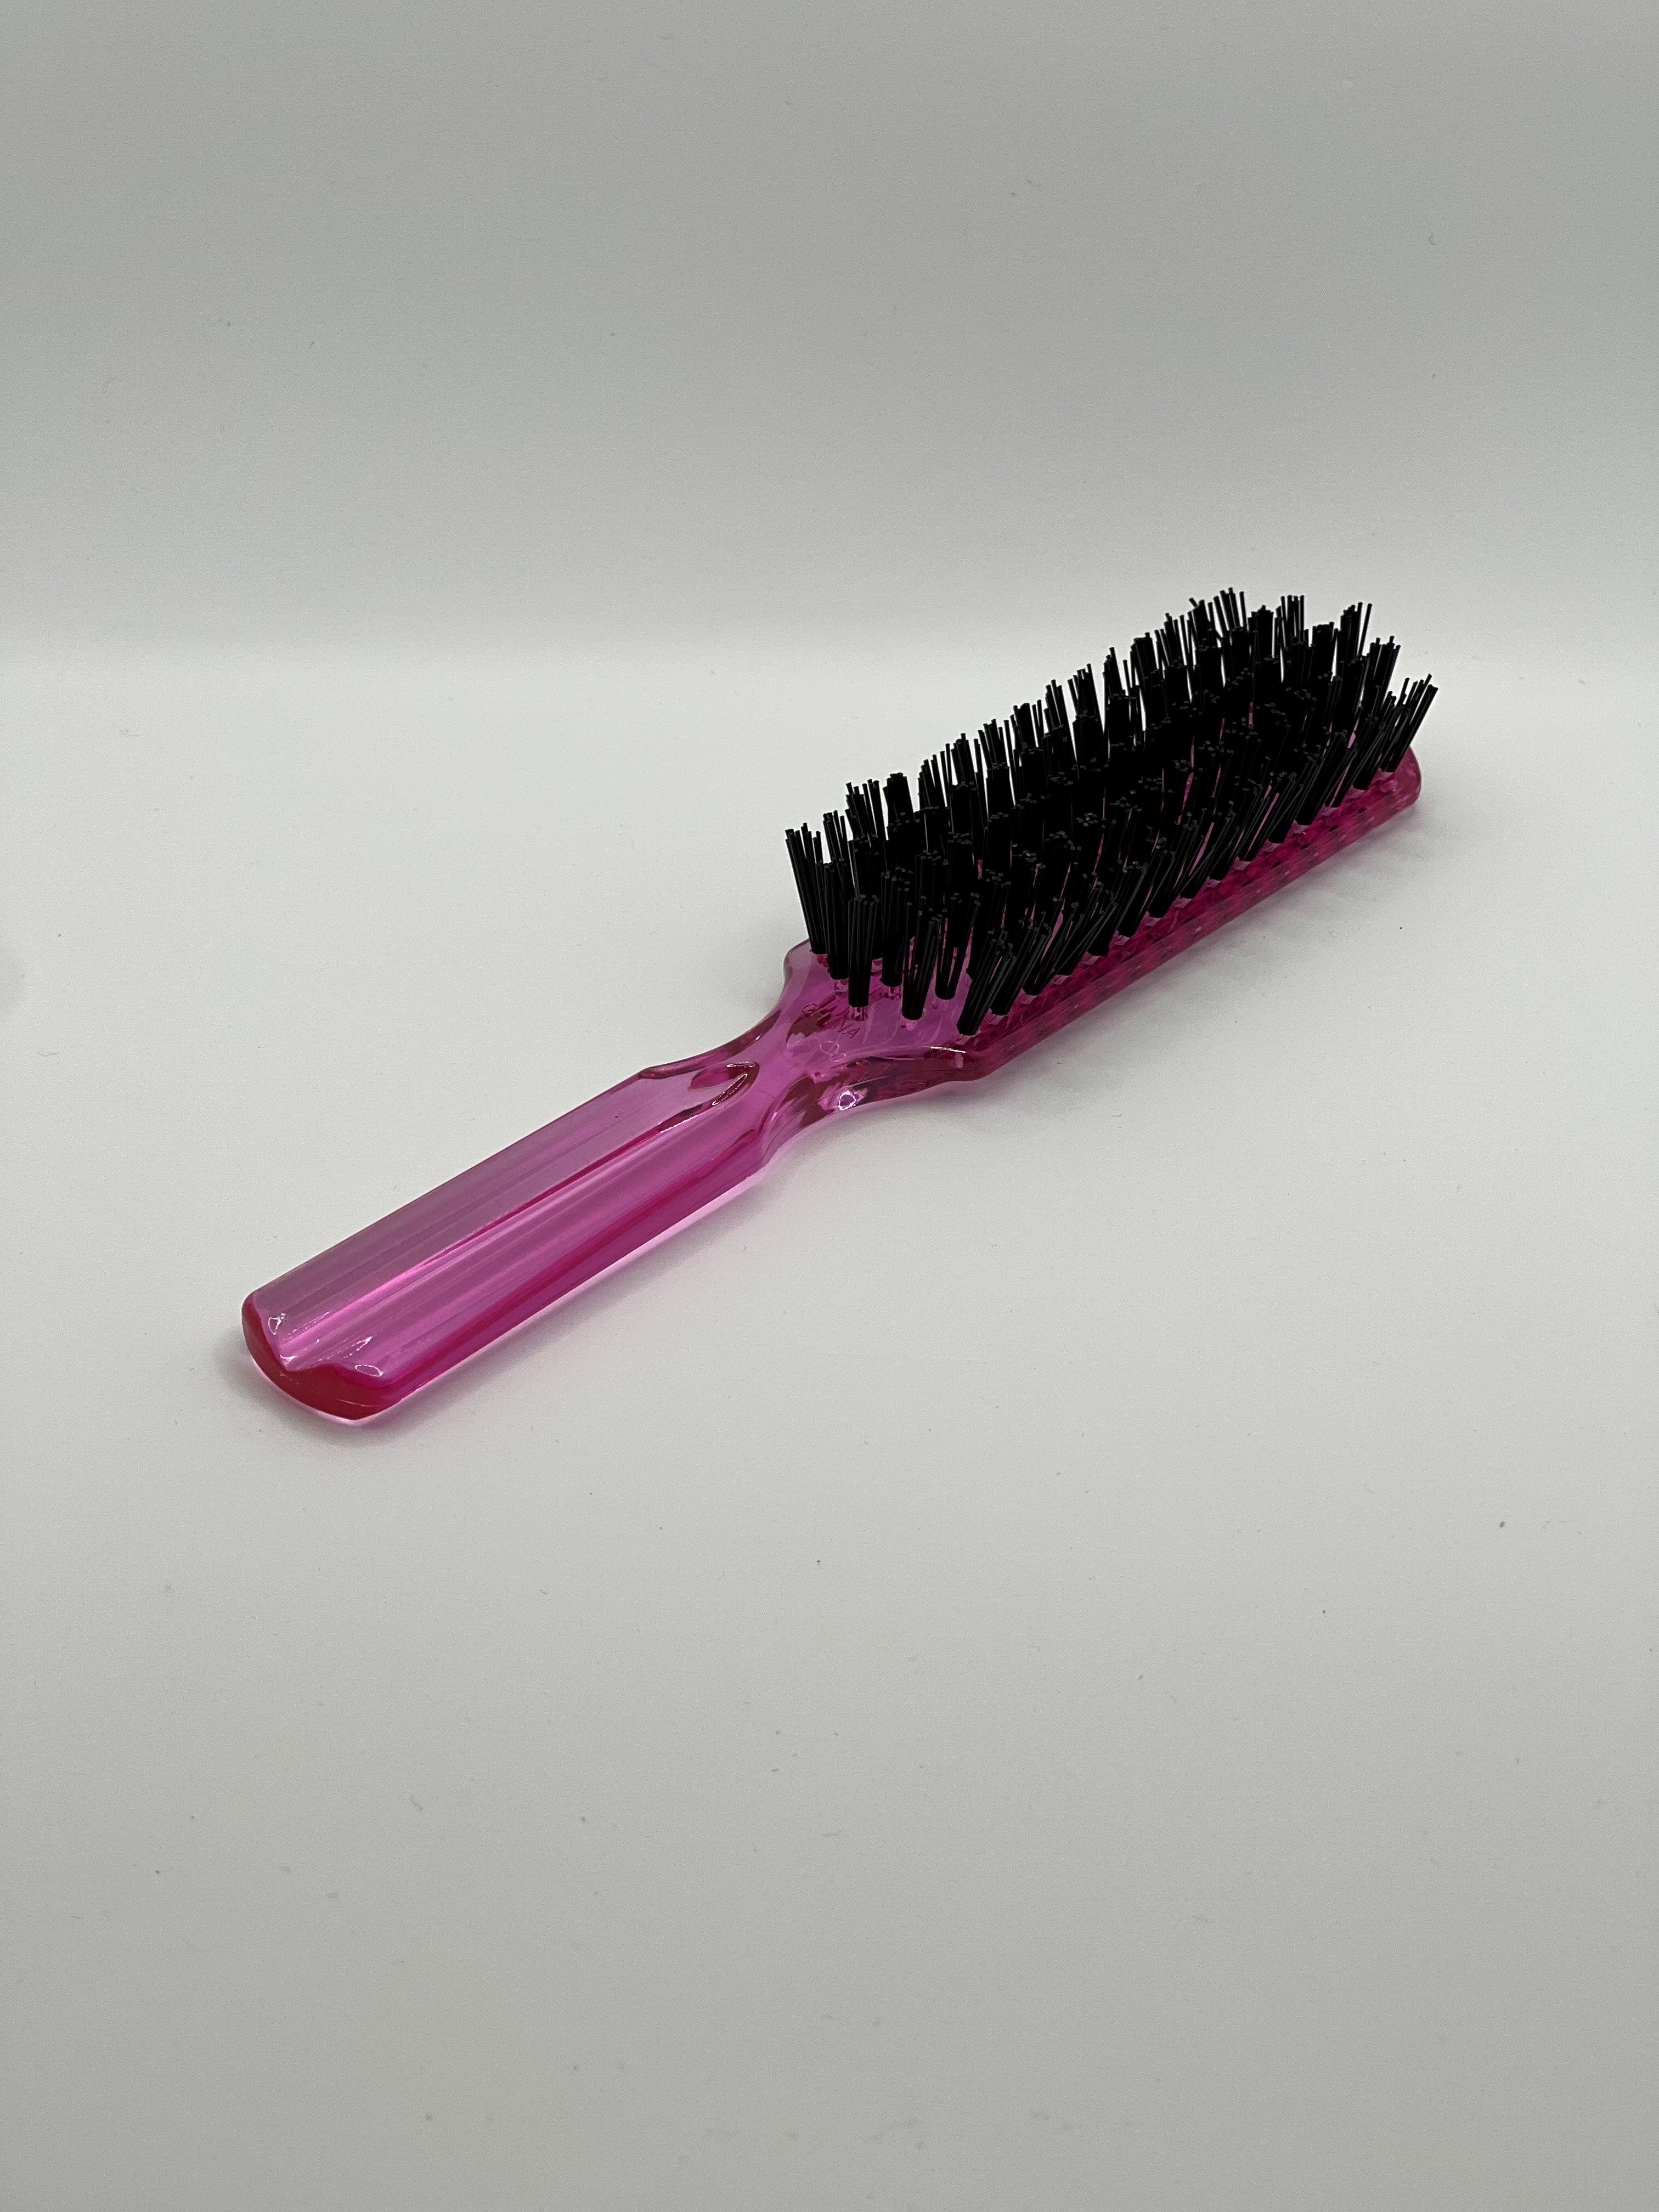 Hairbrush